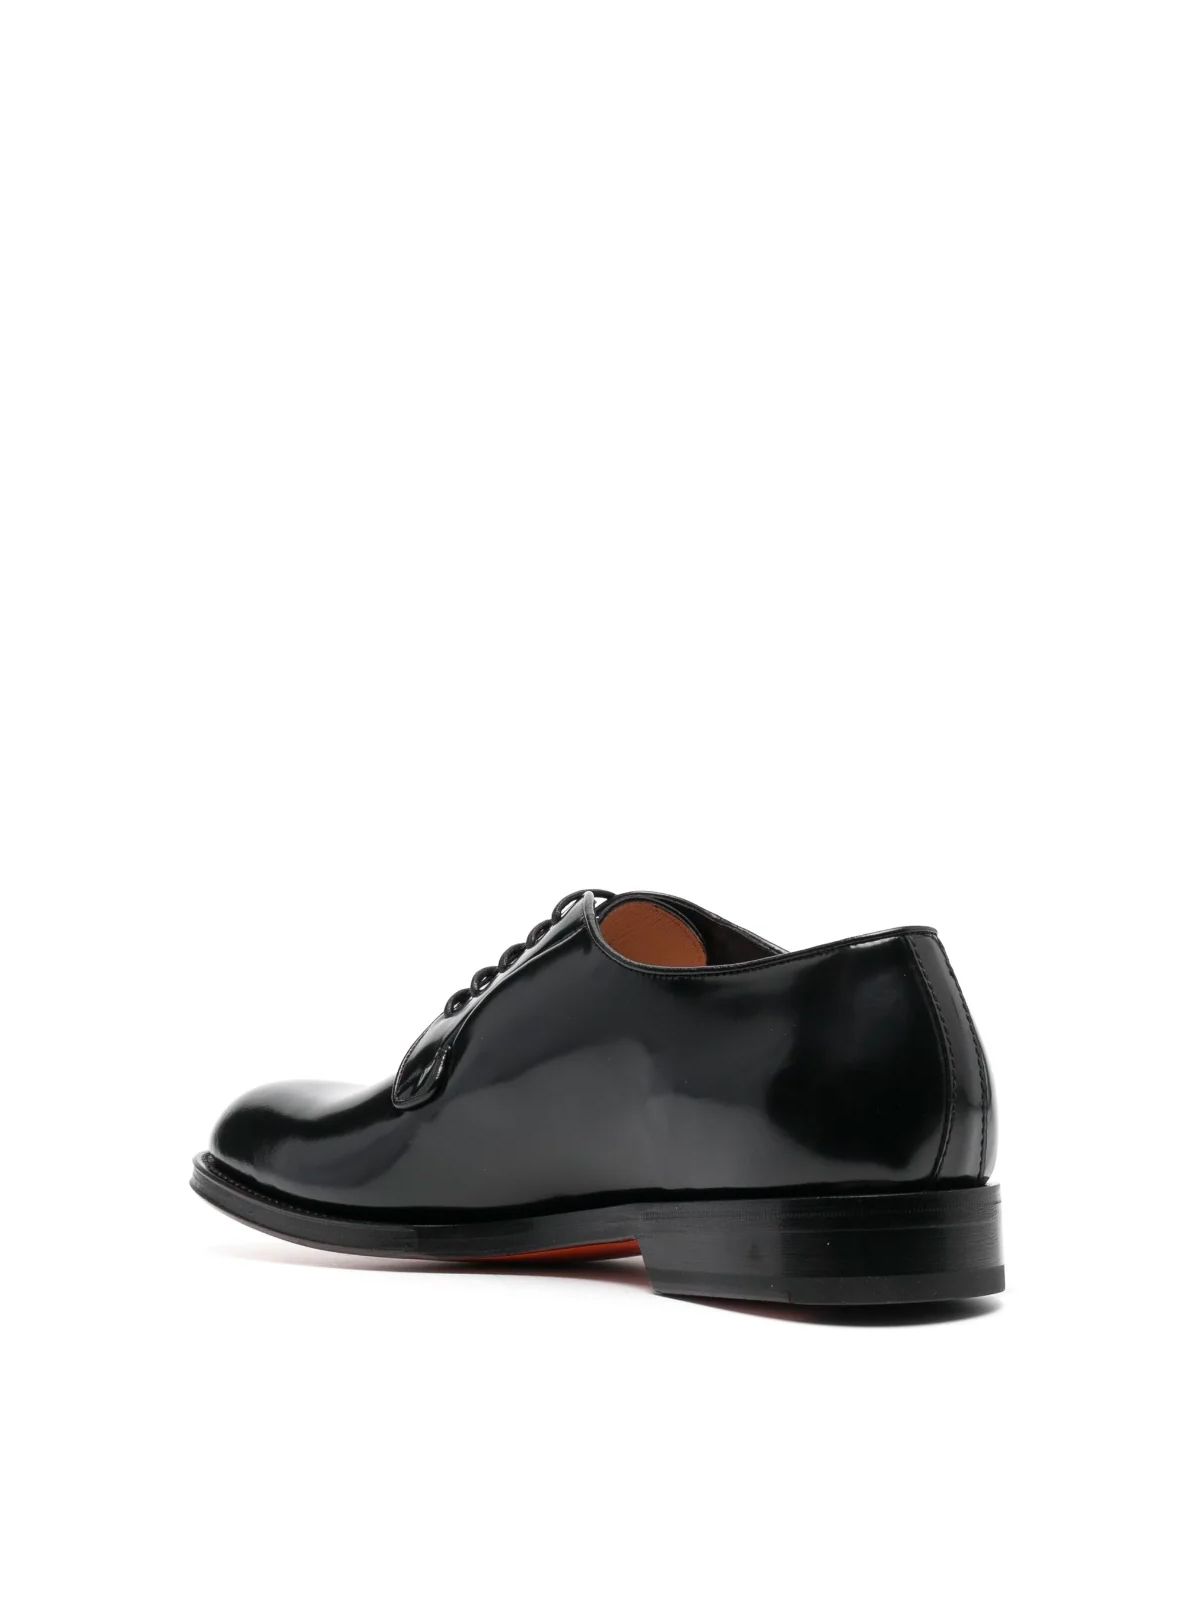 Shop Santoni Men's Laced Shoes: Guillem